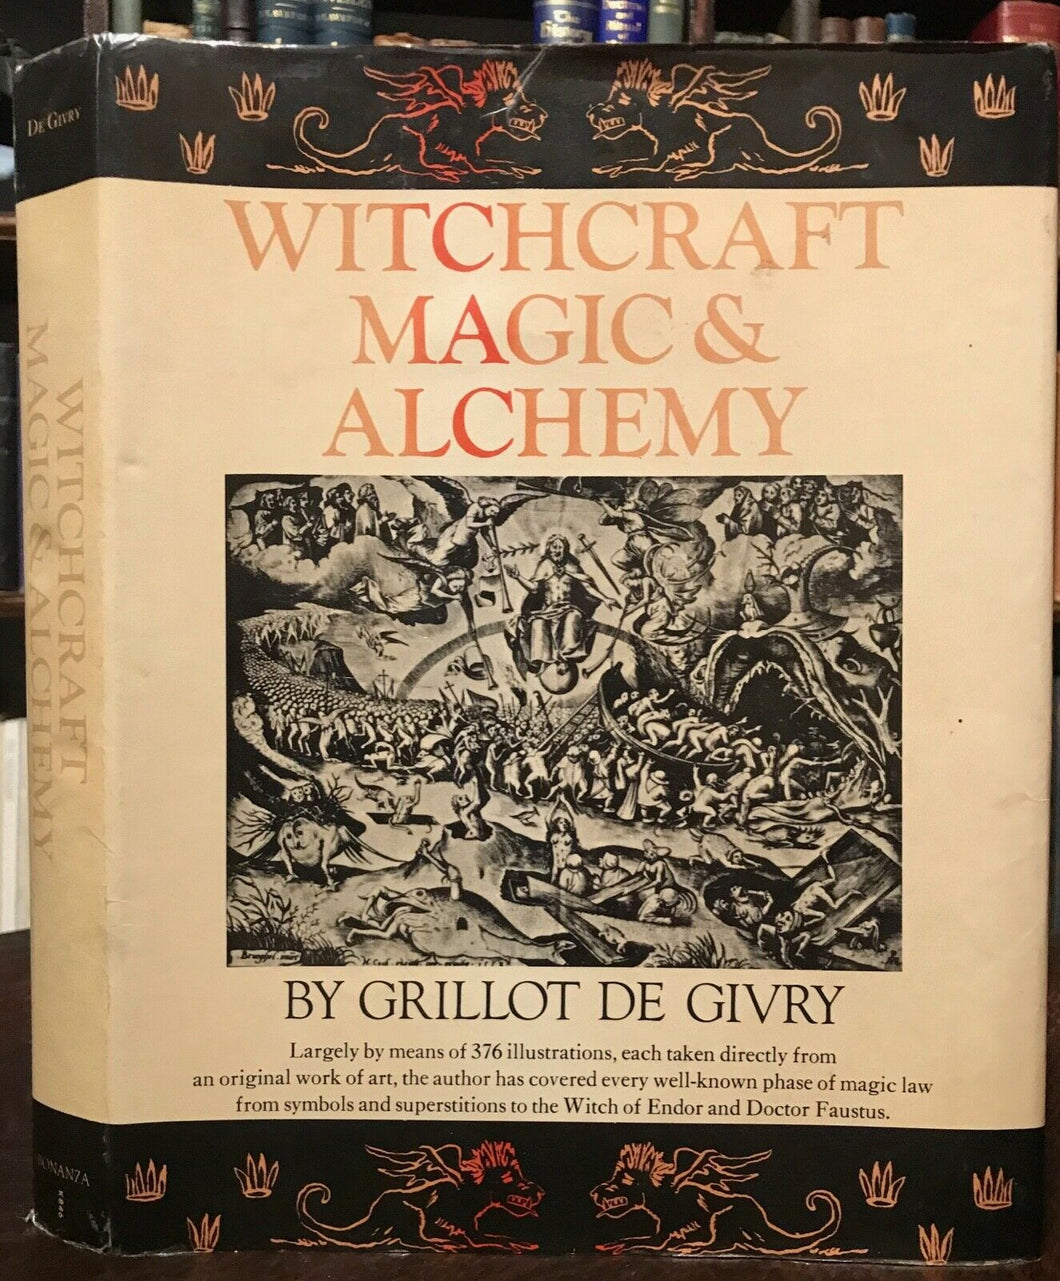 WITCHCRAFT, MAGIC & ALCHEMY - De Givry, 1971 - DEMONS SORCERY MAGICK WICCA